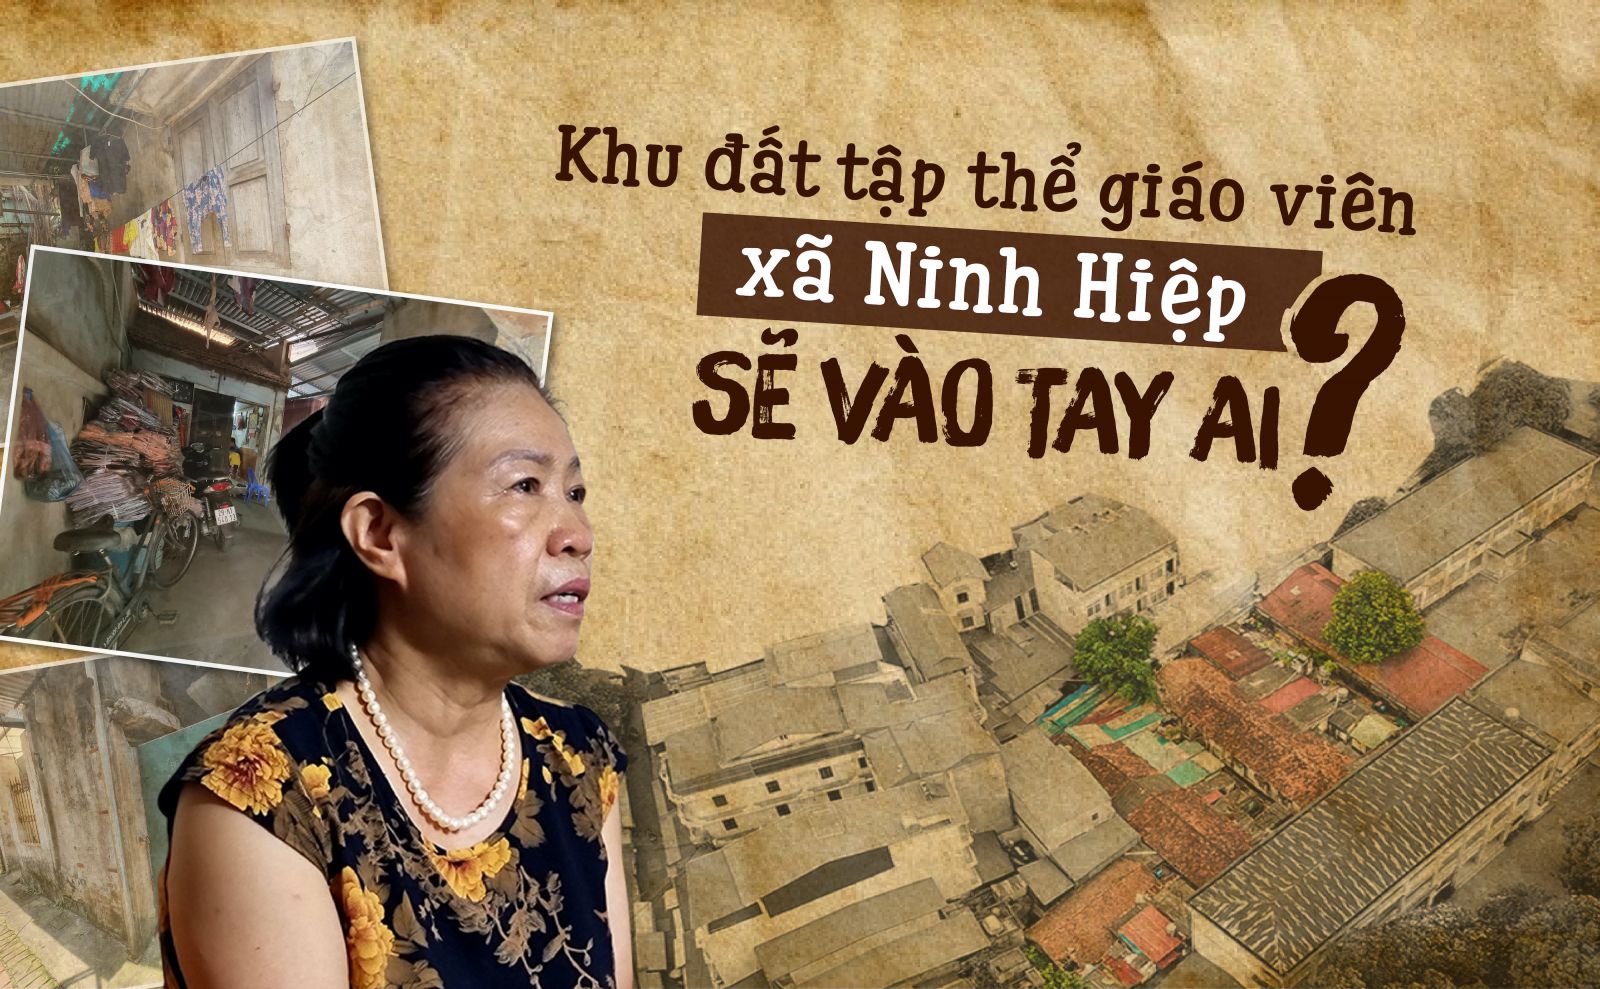 Hà Nội: Khu đất tập thể giáo viên xã Ninh Hiệp sẽ vào tay ai?